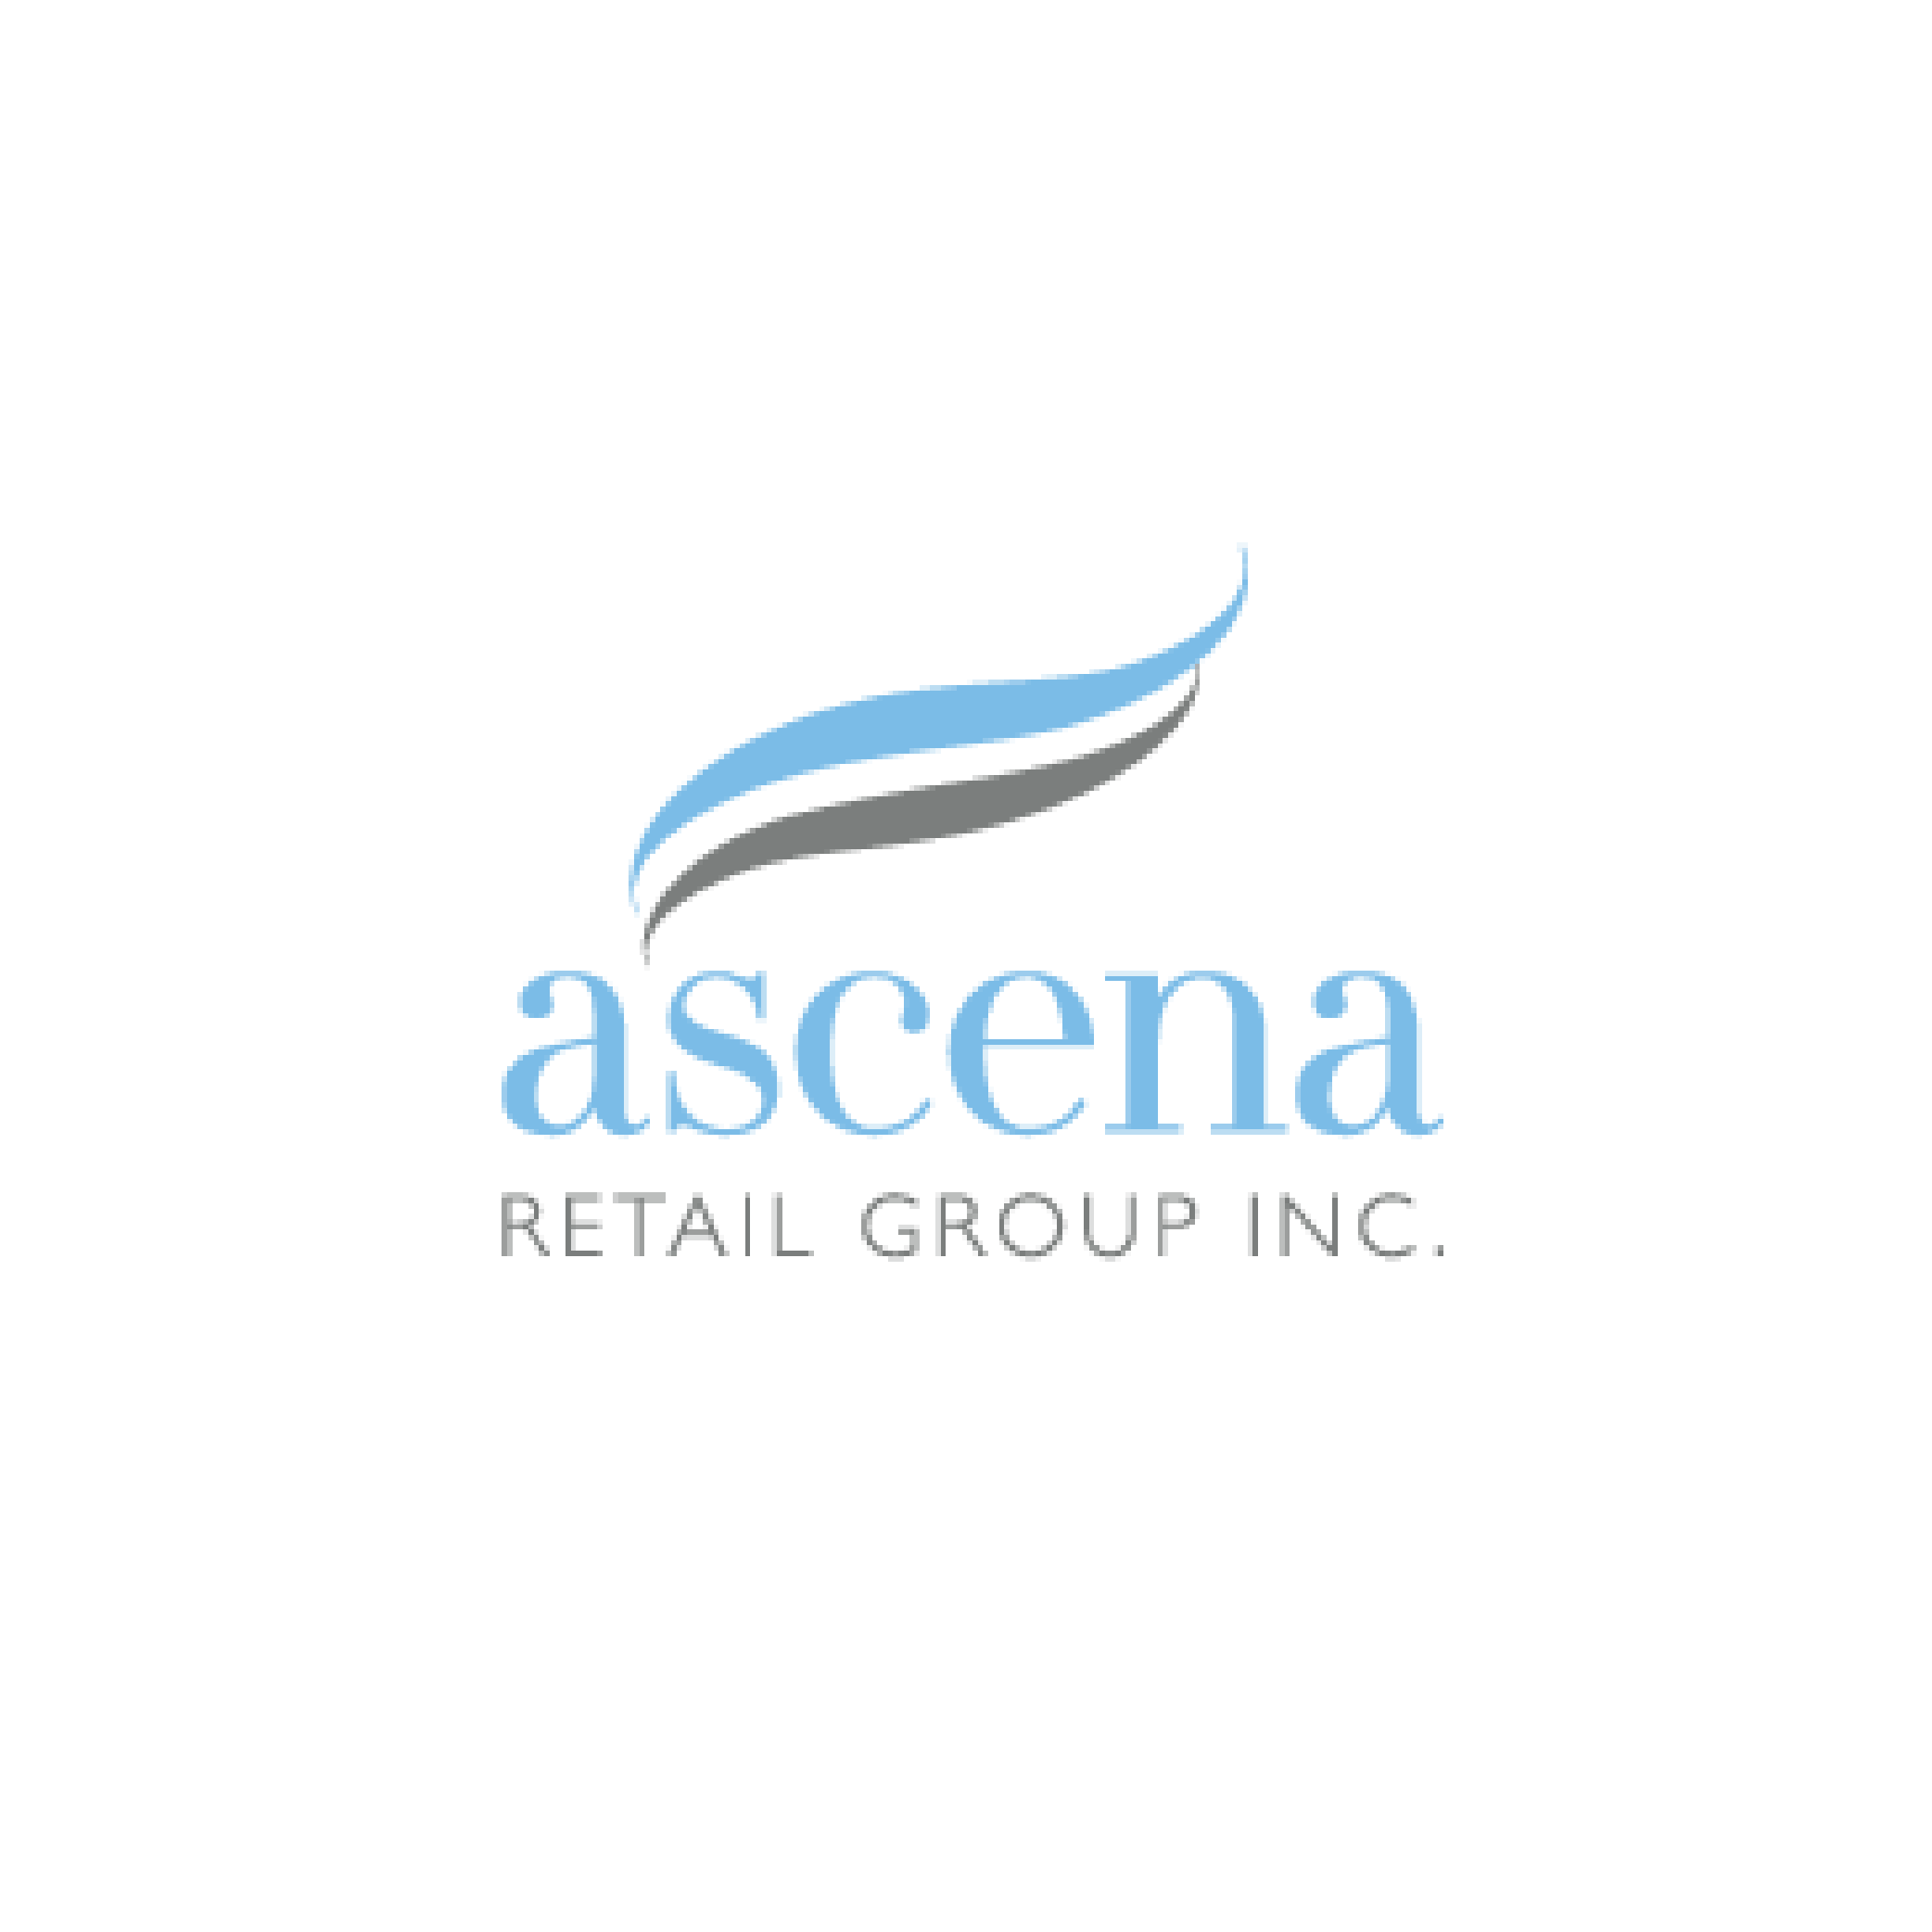 CN Company logos_ascena-min